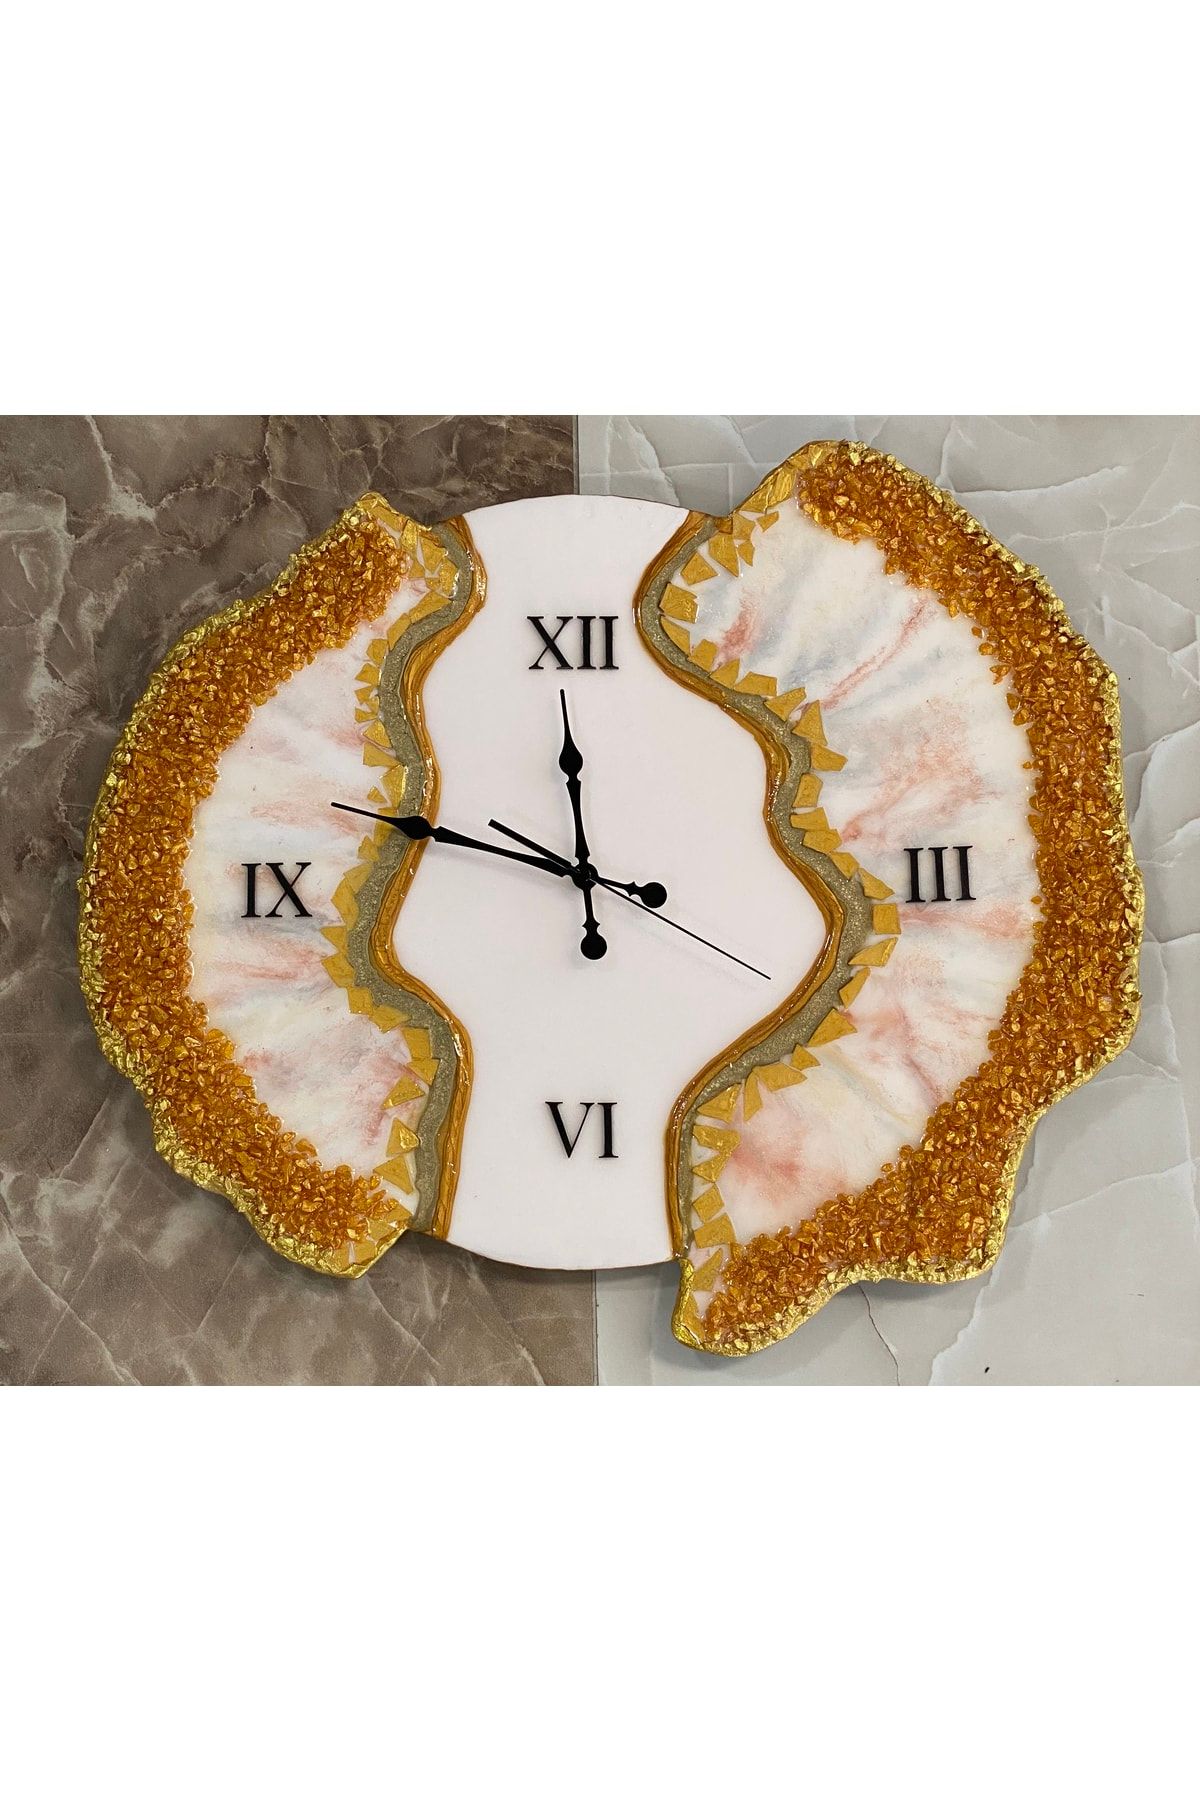 Hit HomeWood Doğal Deniz Taşlı Epoksi Dolgu Saat - Özel Tasarım Ev Dekorasyon Duvar Saat